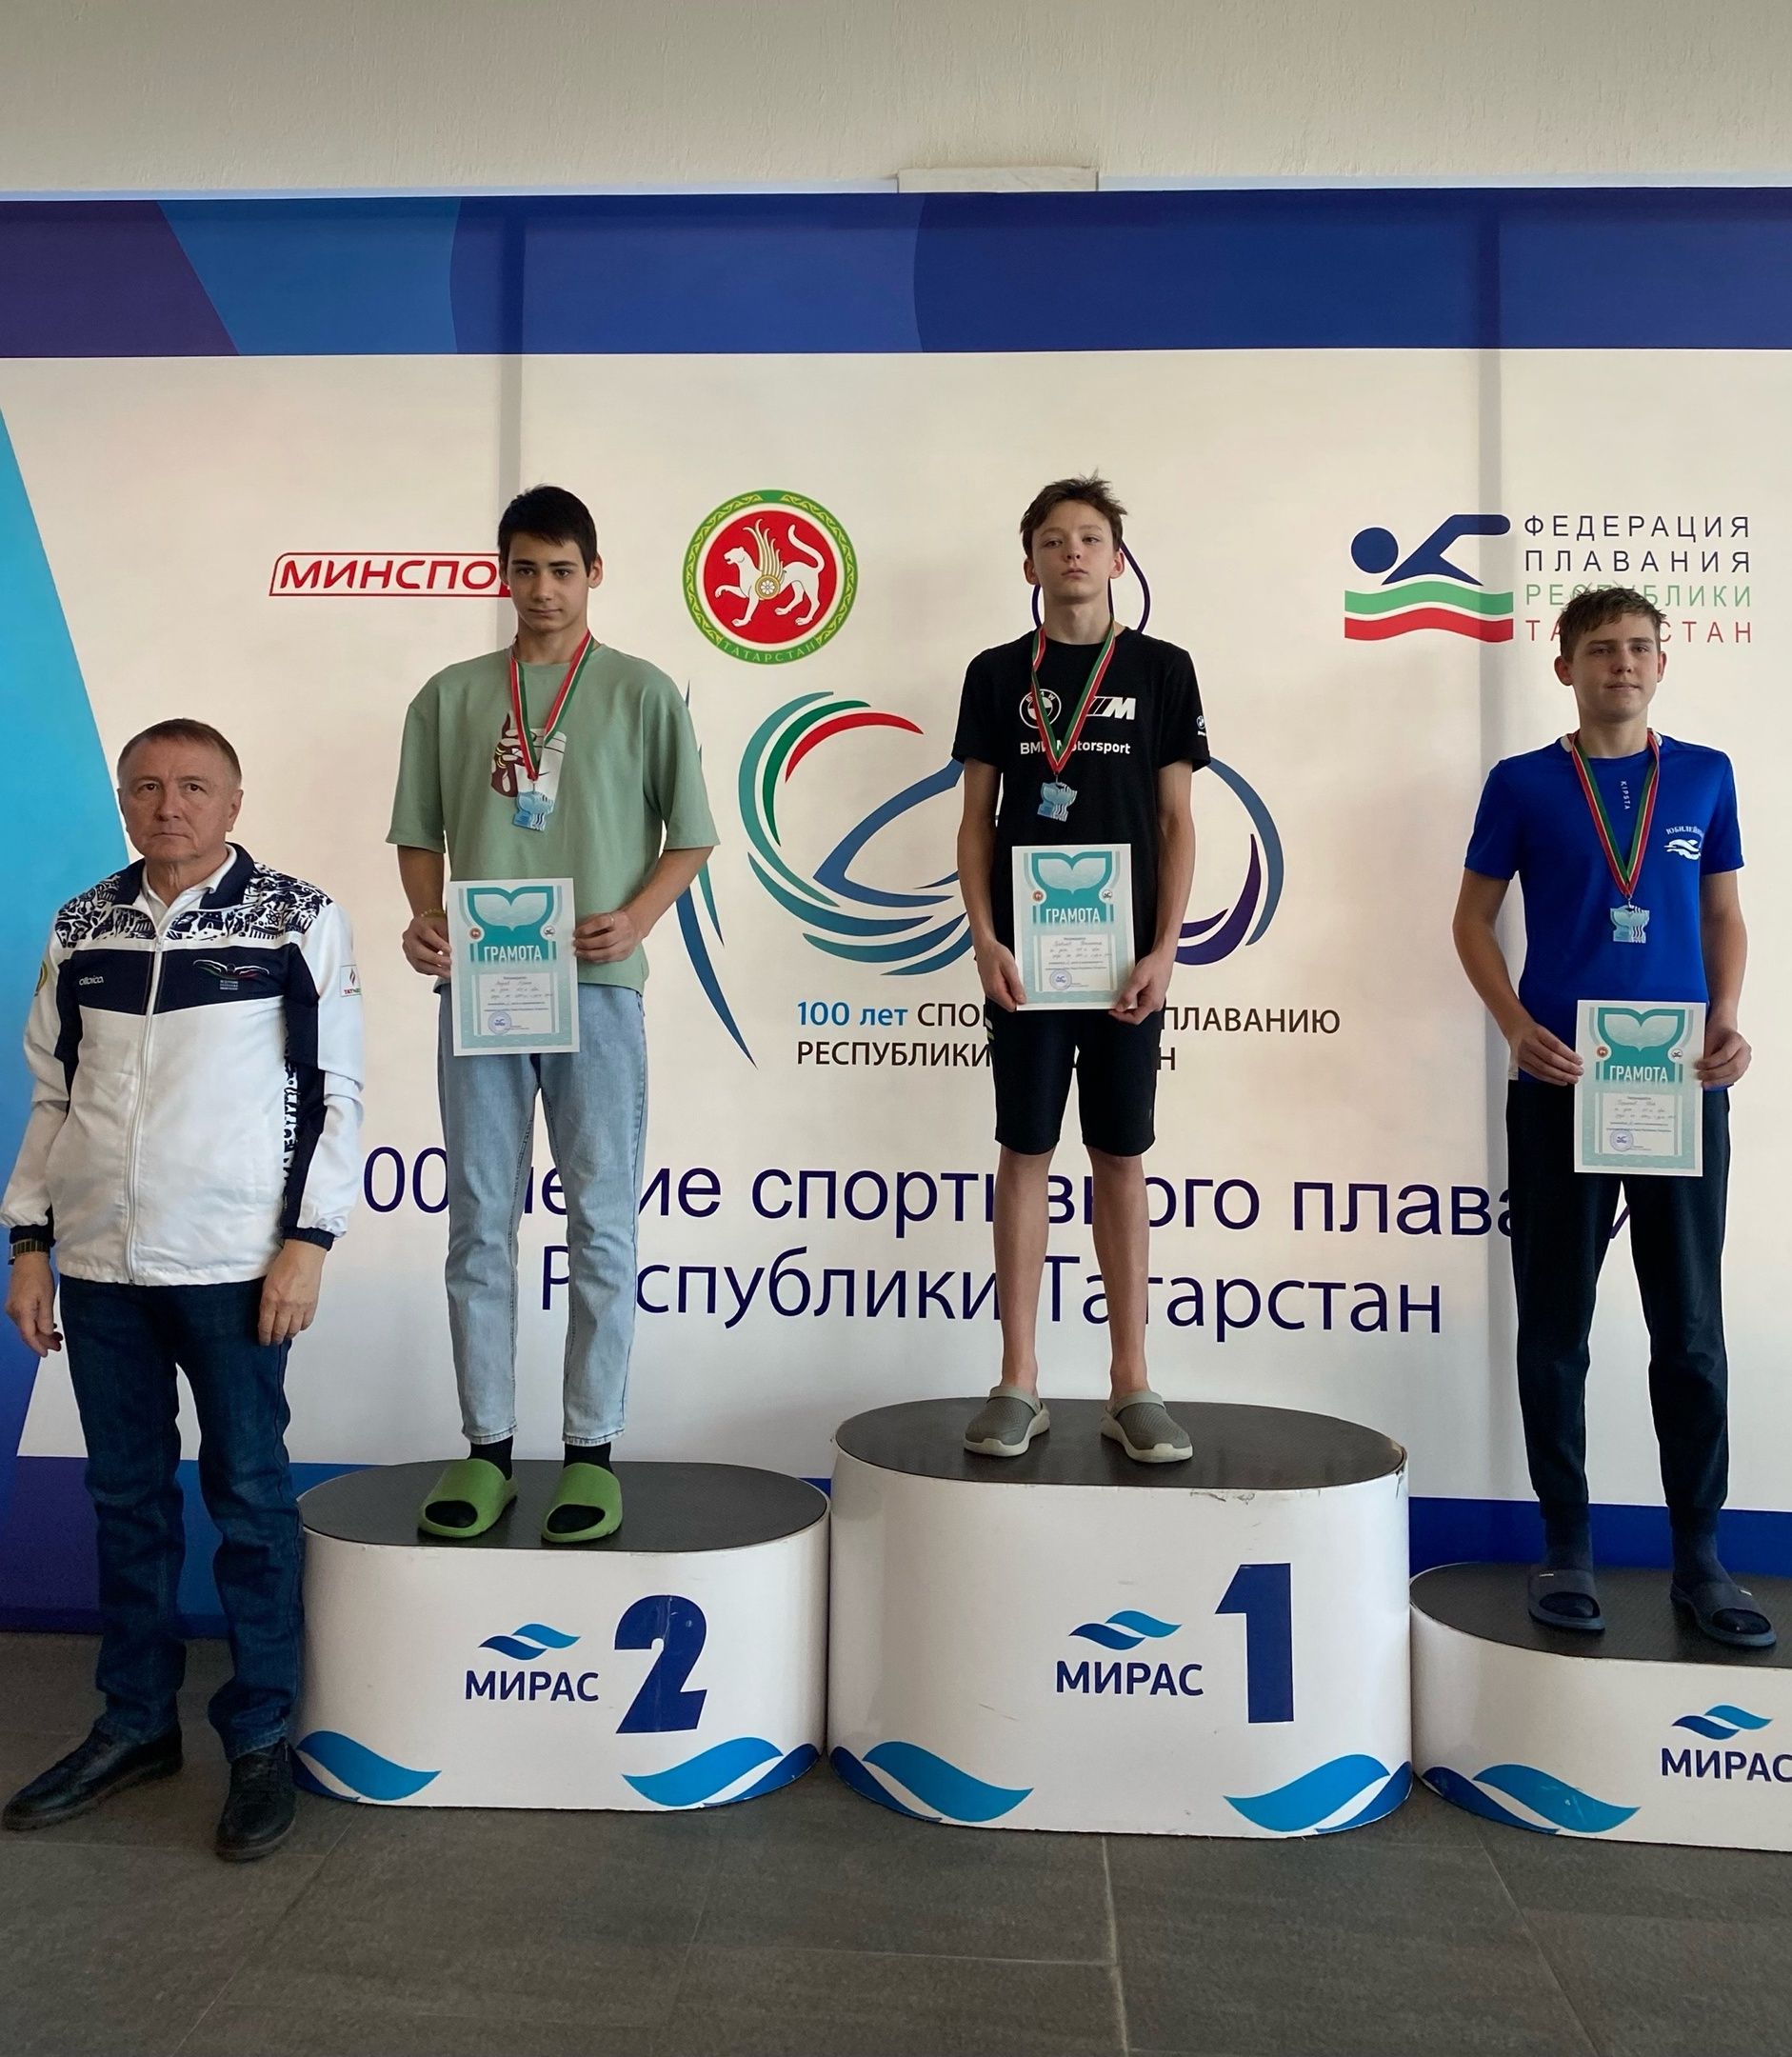 Пловец СШ «Олимп» завоевал второе место на соревновании по плаванию на приз «Кубка Раиса Республики Татарстан»